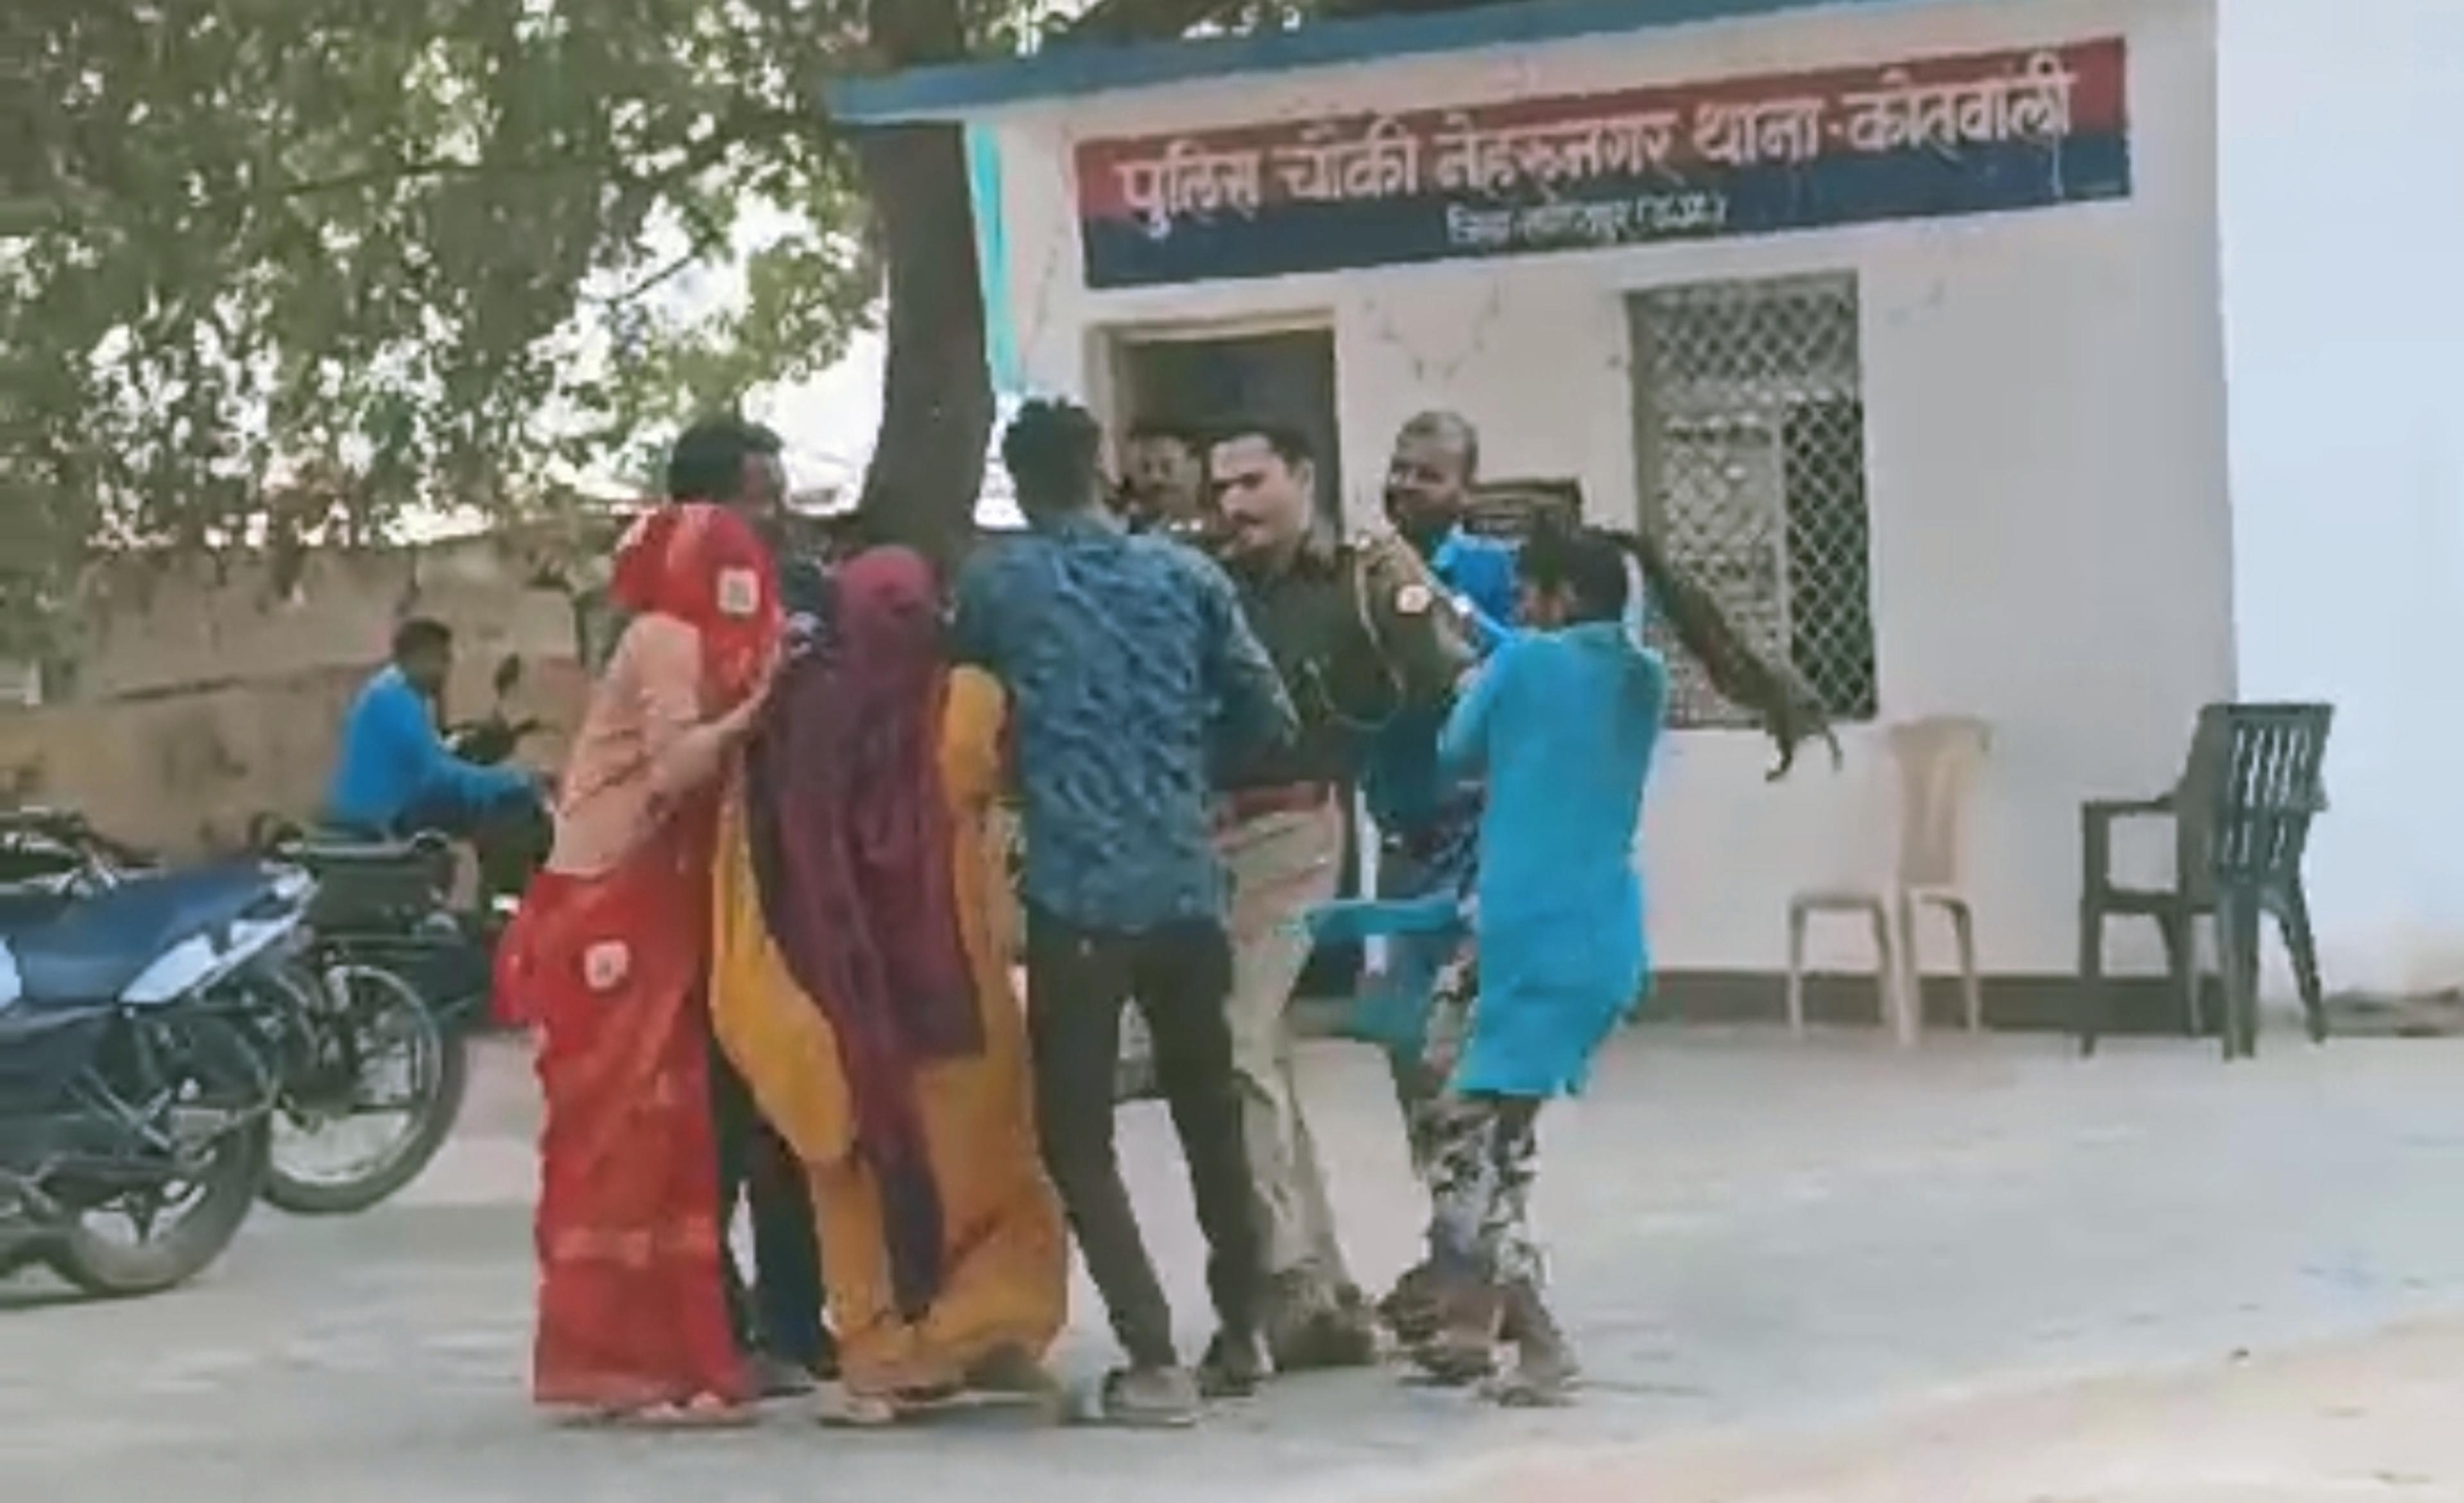 ललितपुर में पुलिस चौकी के अंदर महिलाओं से मारपीट का वीडियो वायरल, दो कर्मचारियों पर लगे आरोप